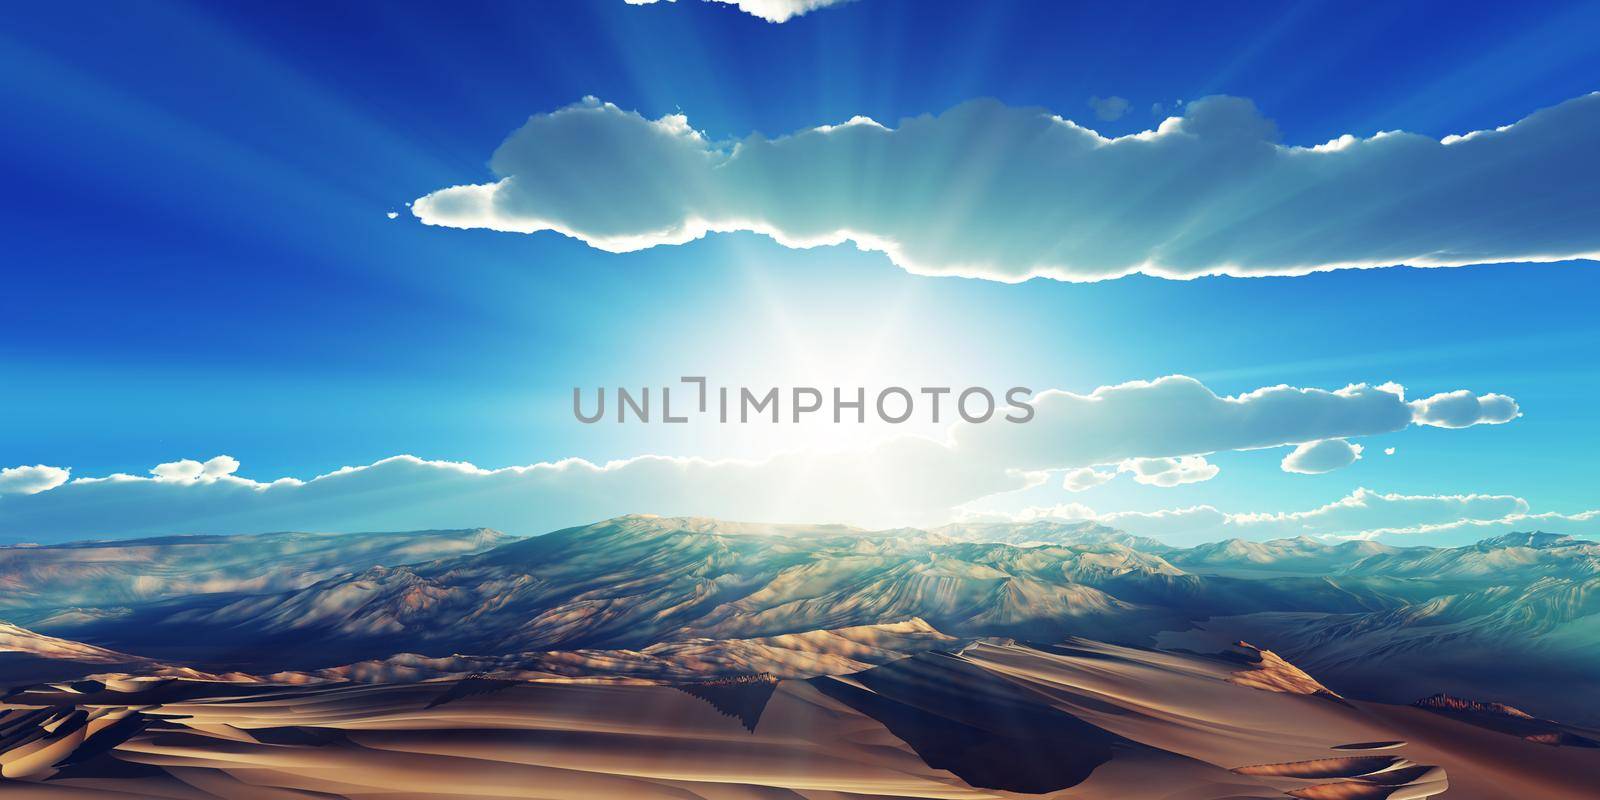 Dunes sunset over the desert. 3d rendering by alex_nako